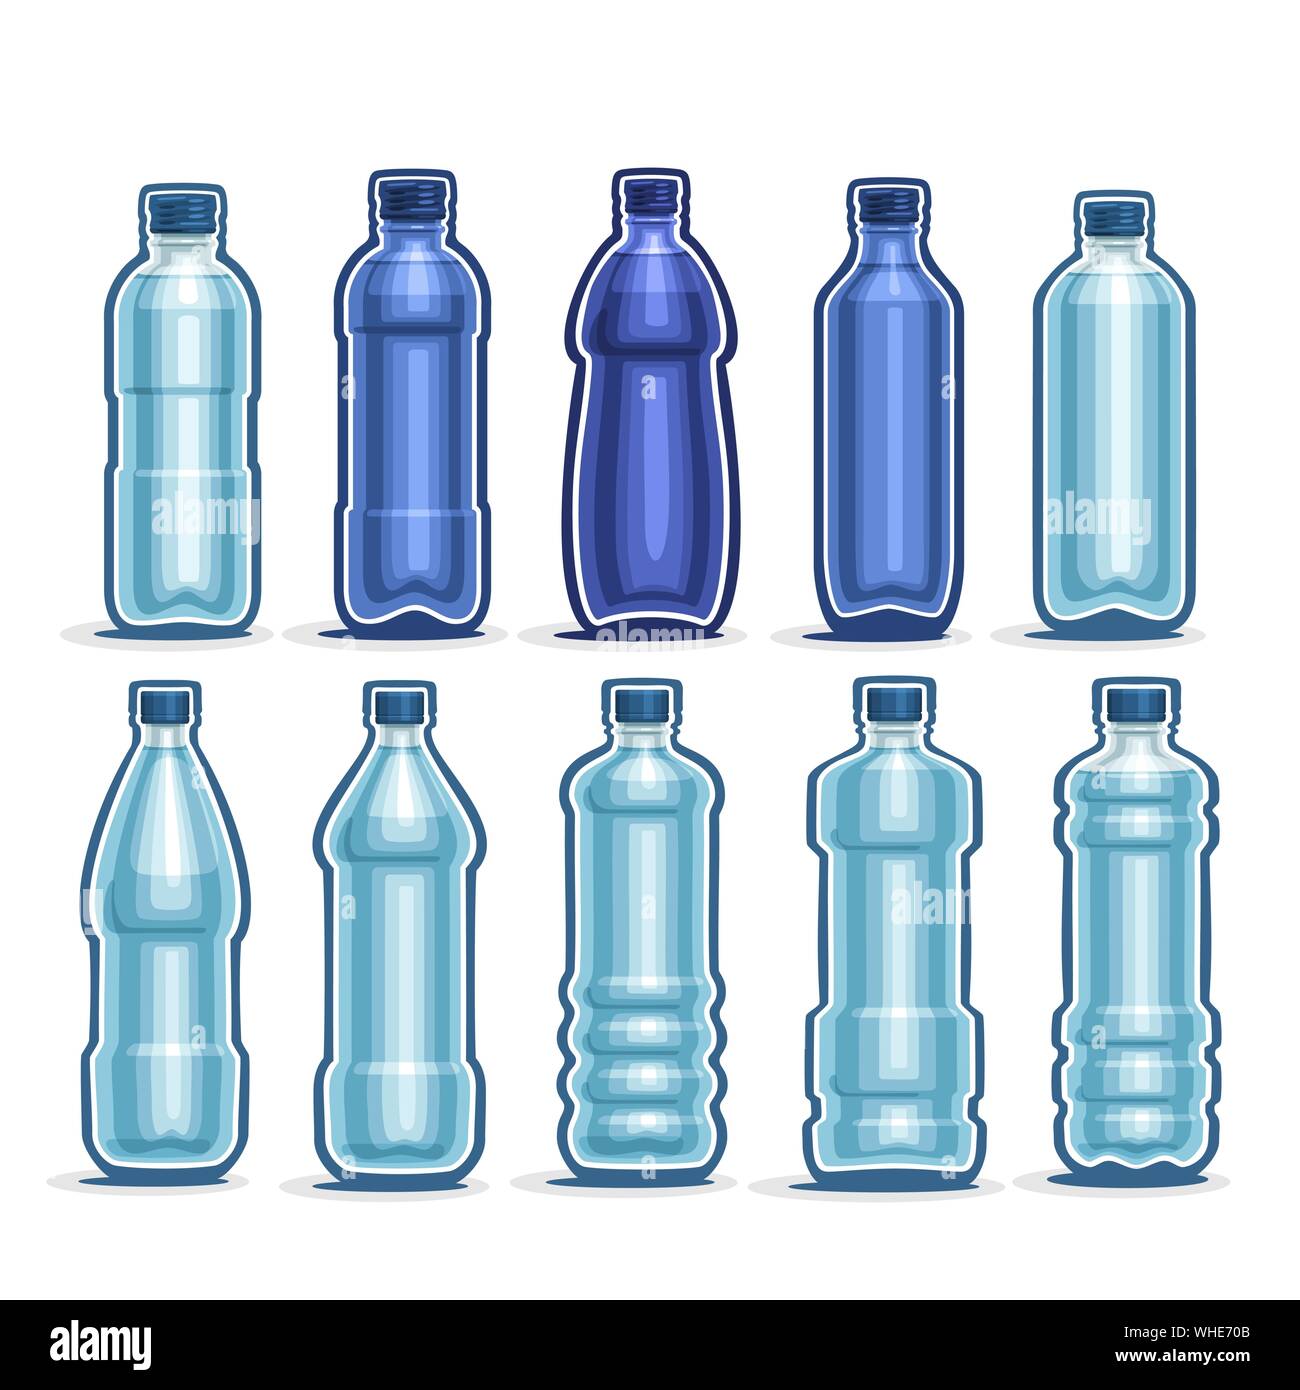 Vektor Einrichten von Kunststoff blau Flaschen mit Kappe für Mineralwasser, Sammlung von 10 Voll dunkel-blau Liter Container mit Deckel für Trinkwasser oder Mineral d Stock Vektor